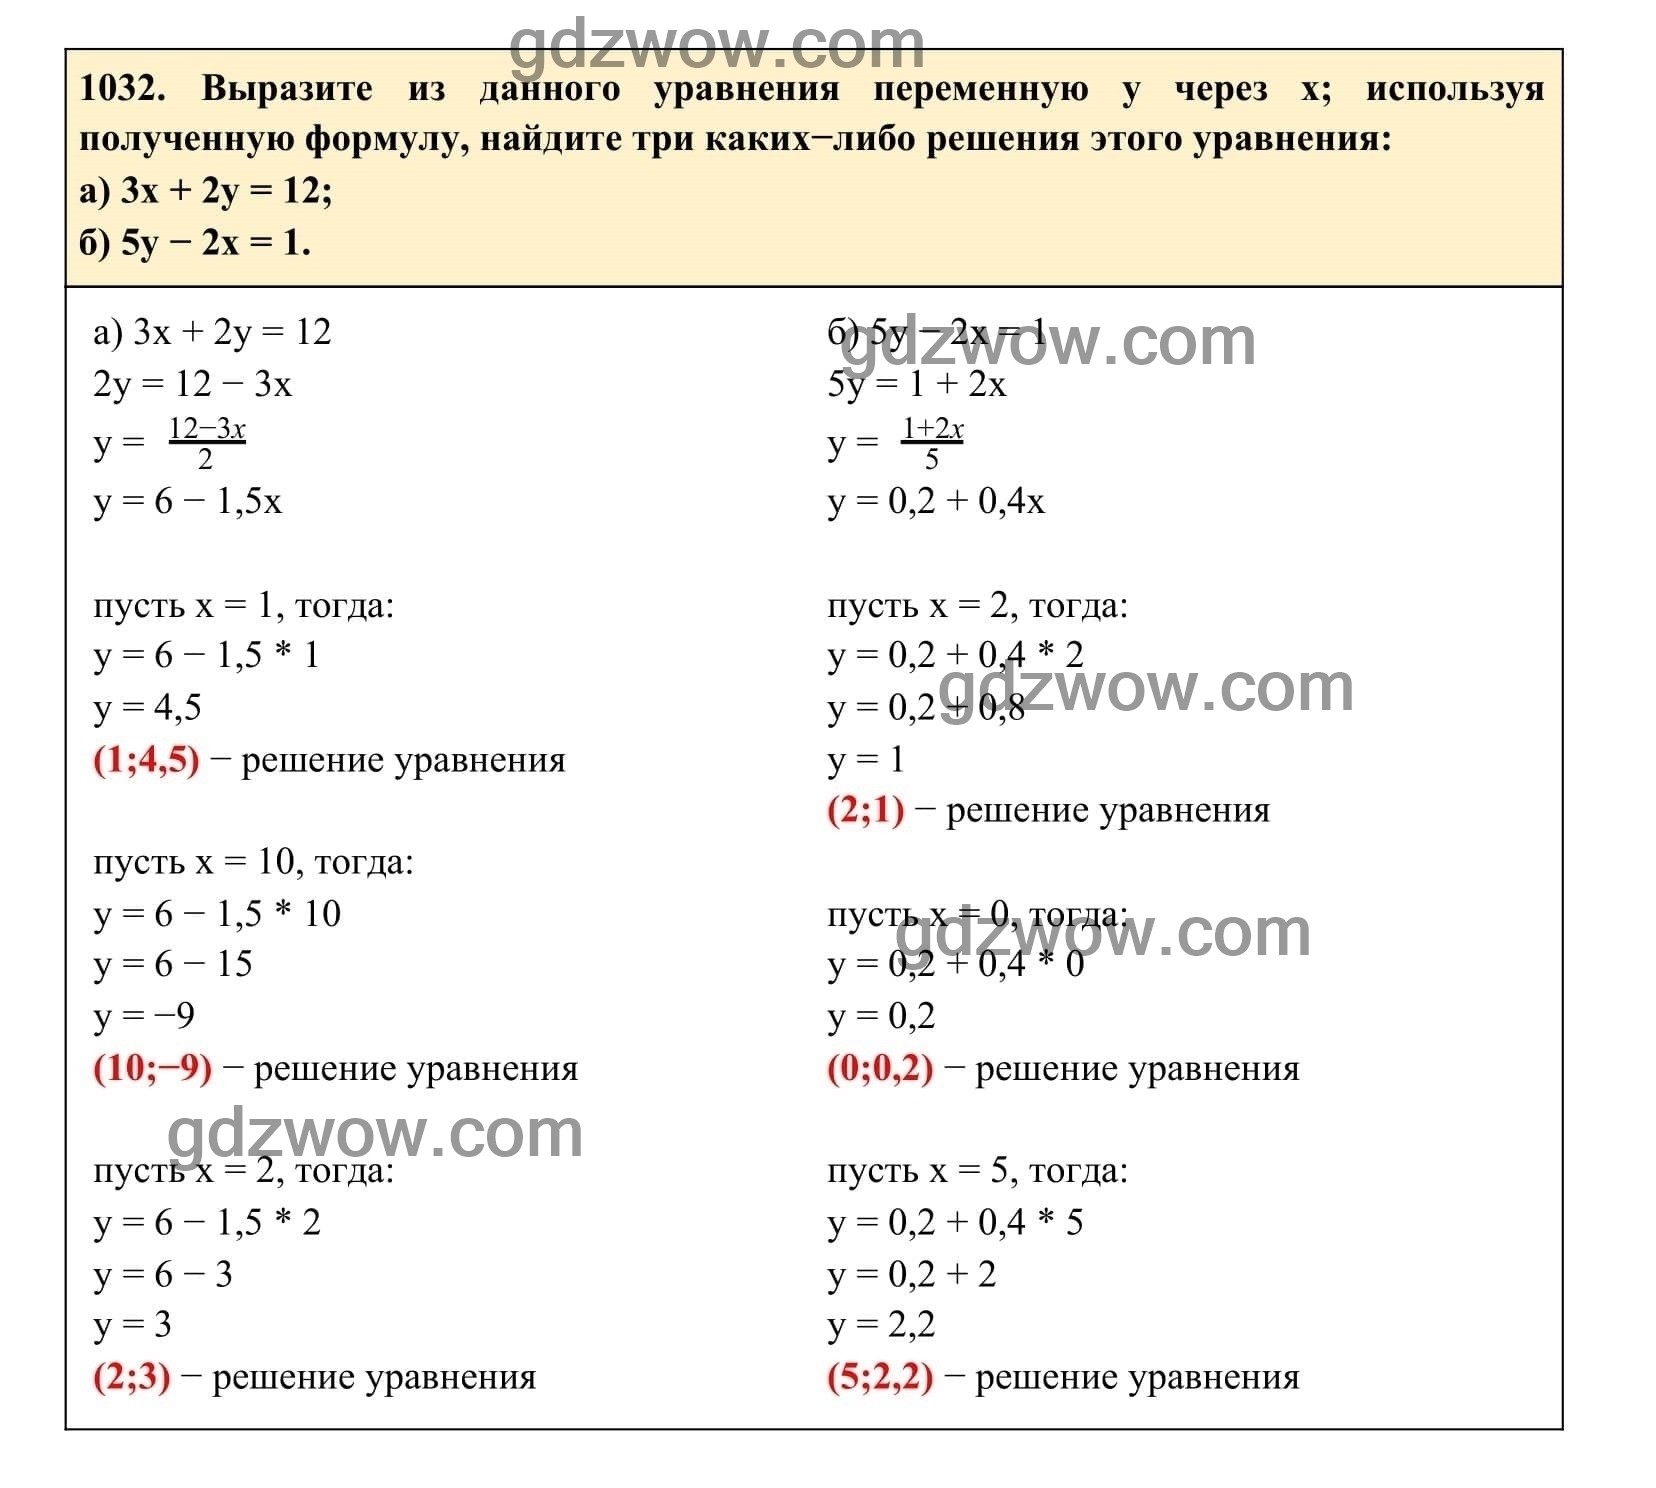 Упражнение 1032 - ГДЗ по Алгебре 7 класс Учебник Макарычев (решебник) - GDZwow